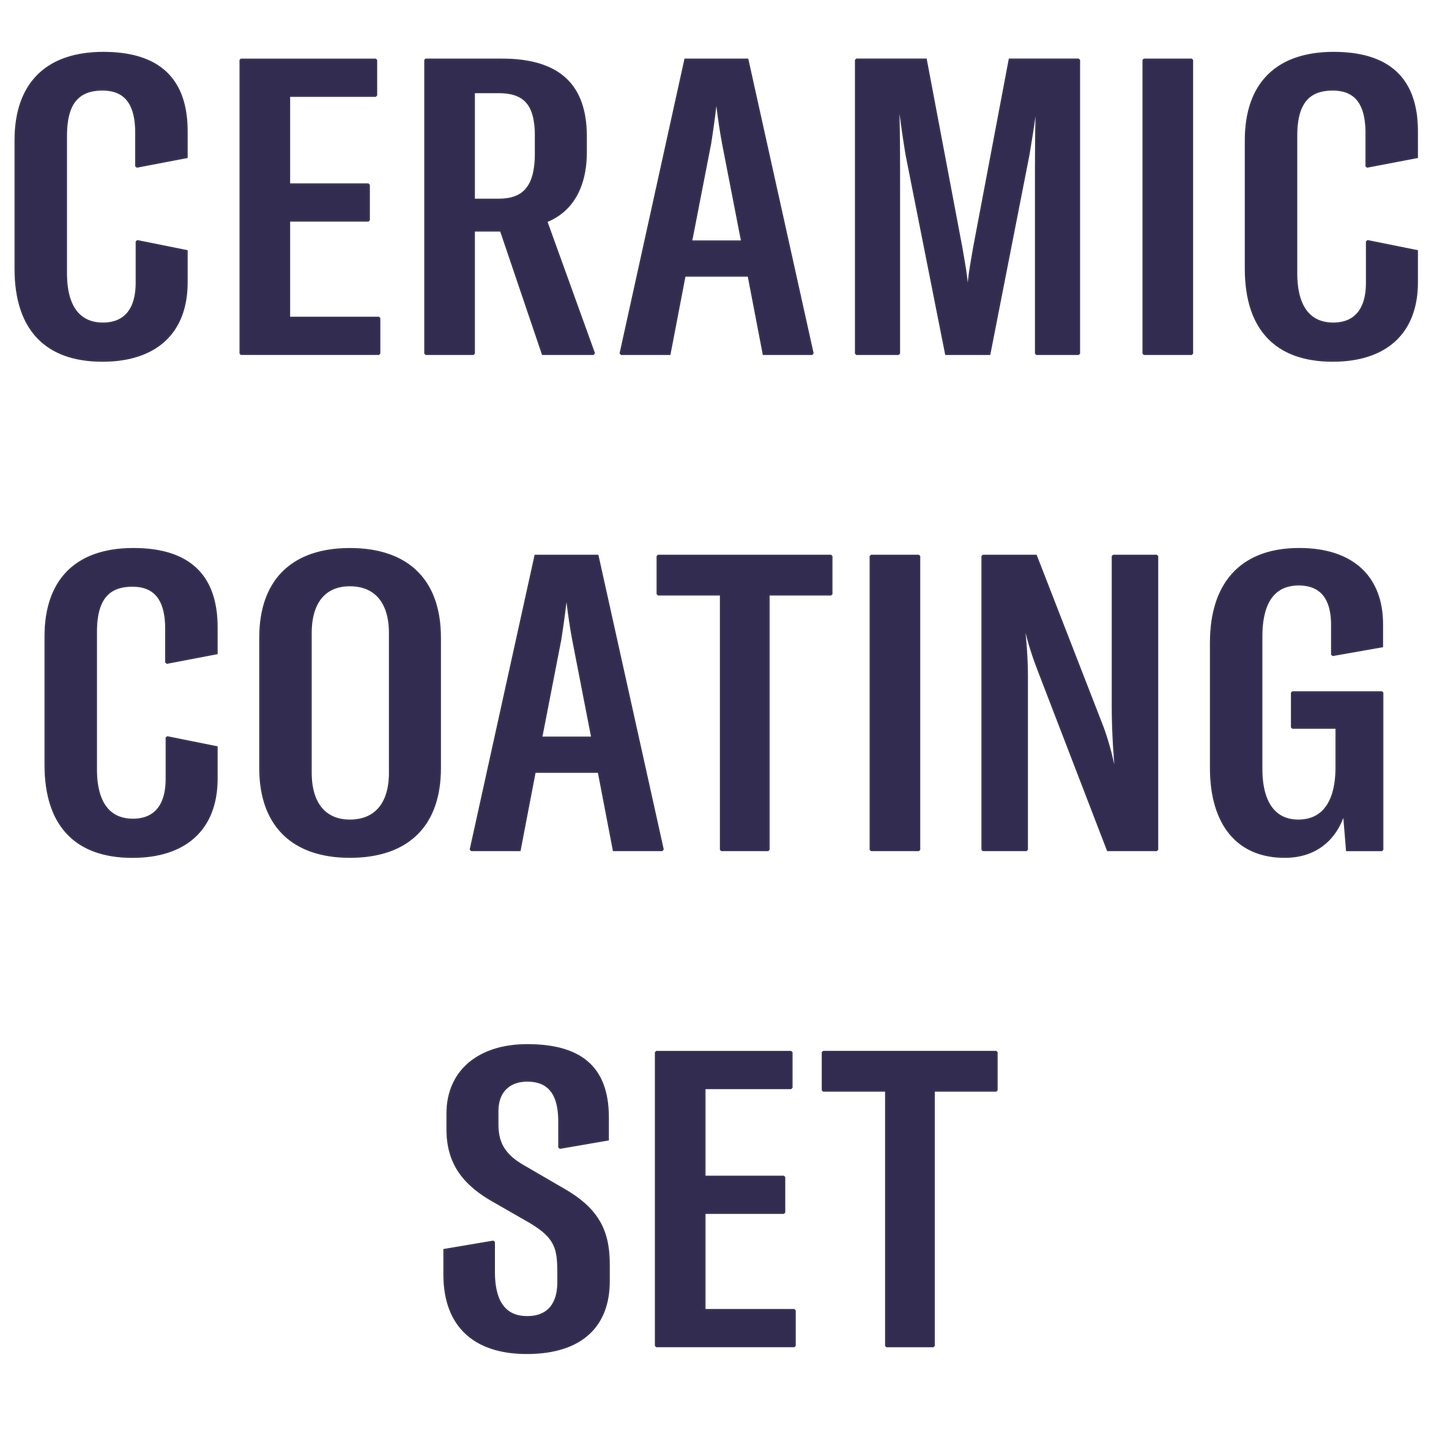 Ceramic Coating Set